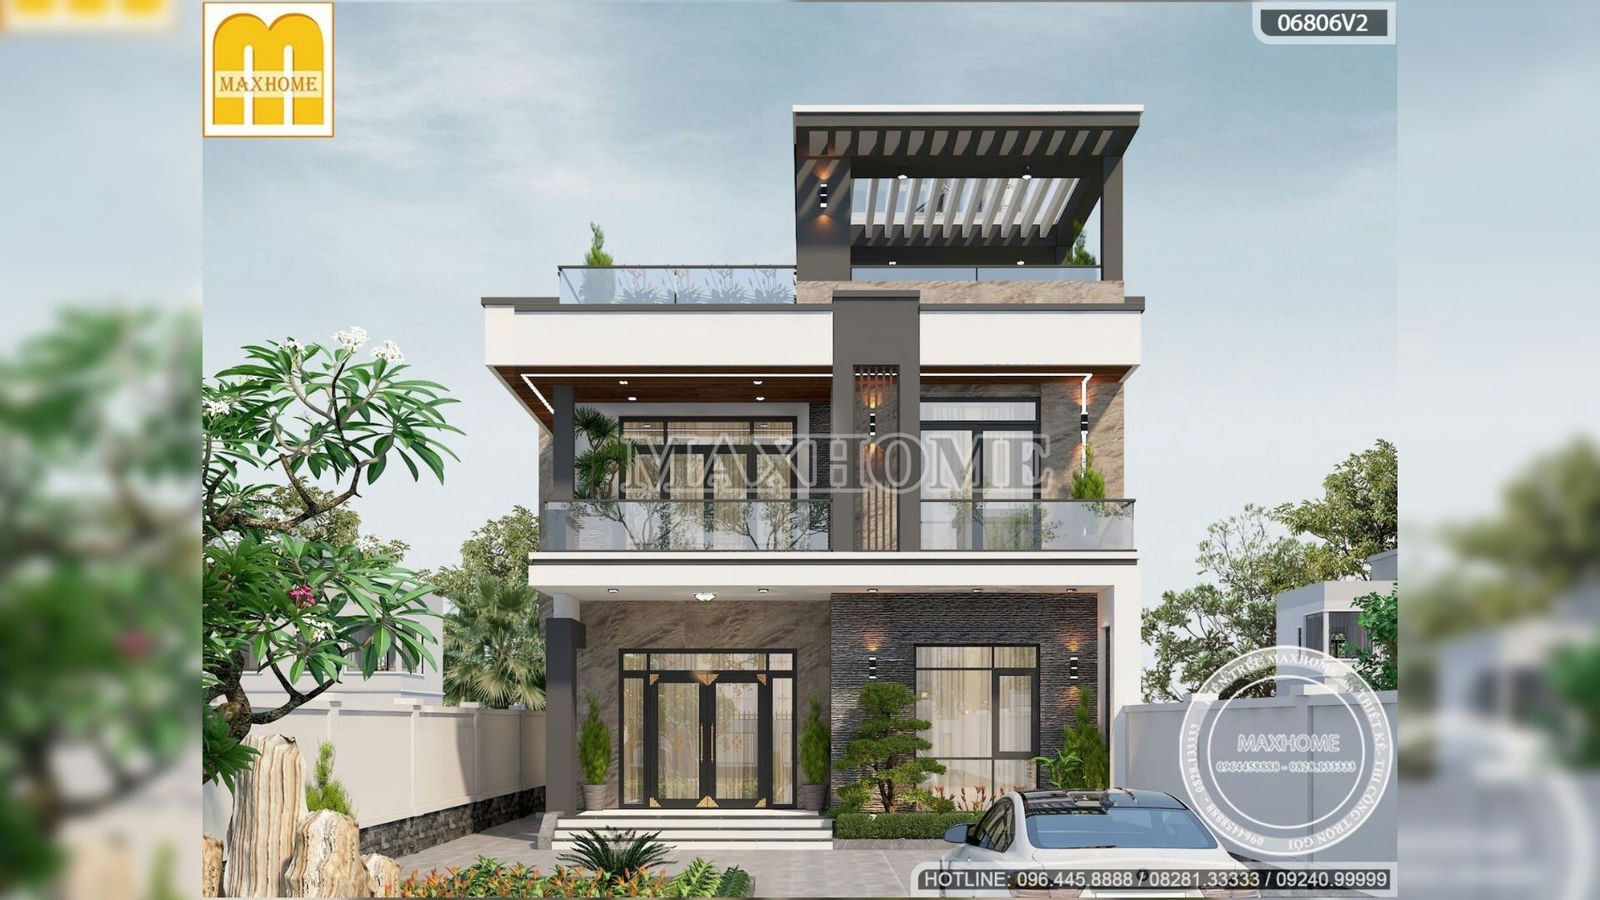 Thiết kế nhà hiện đại 2 tầng 1 tum siêu đẹp với chi phí hợp lý | MH02069